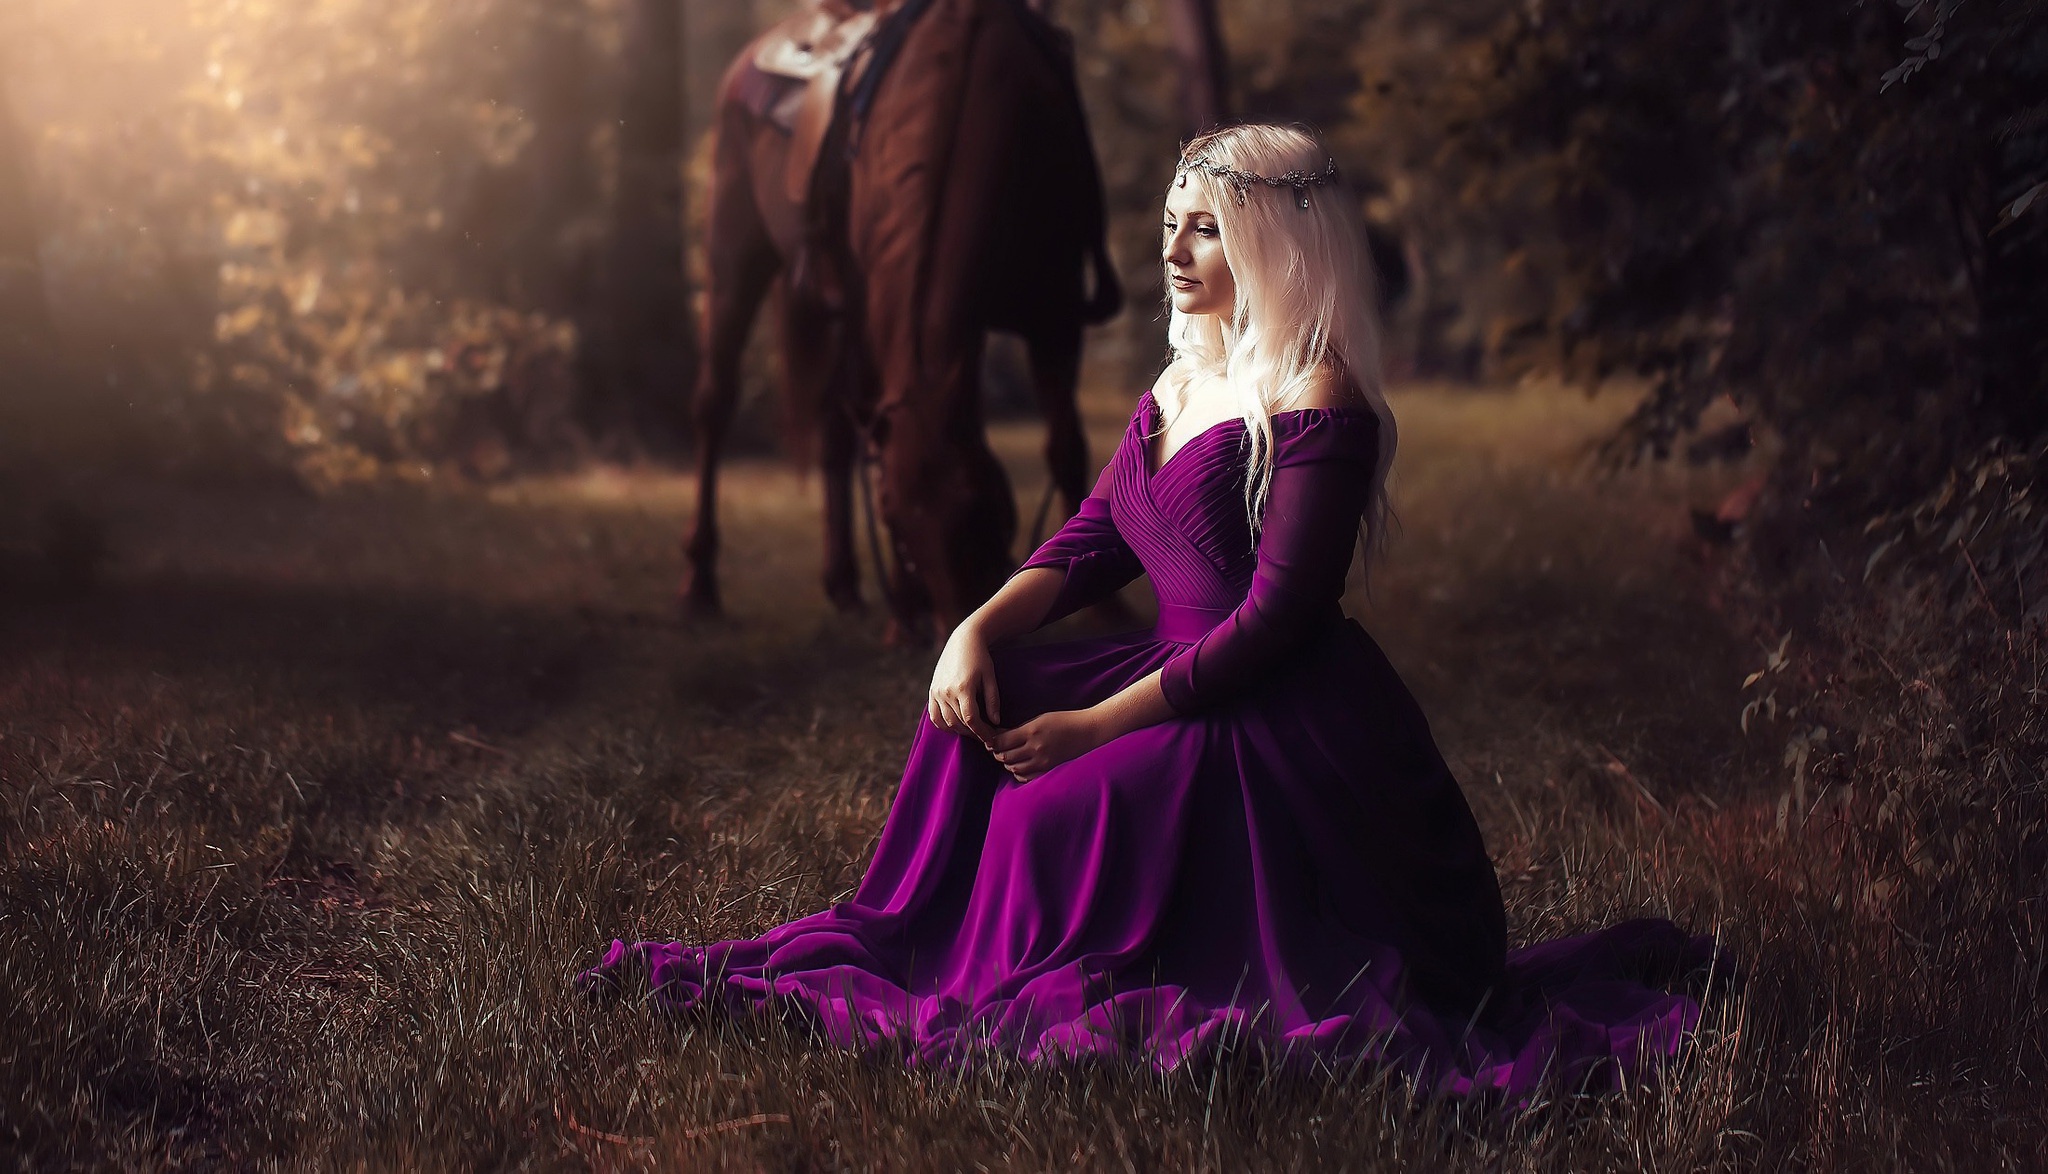 Download mobile wallpaper Horse, Blonde, Model, Women, Purple Dress, Depth Of Field for free.